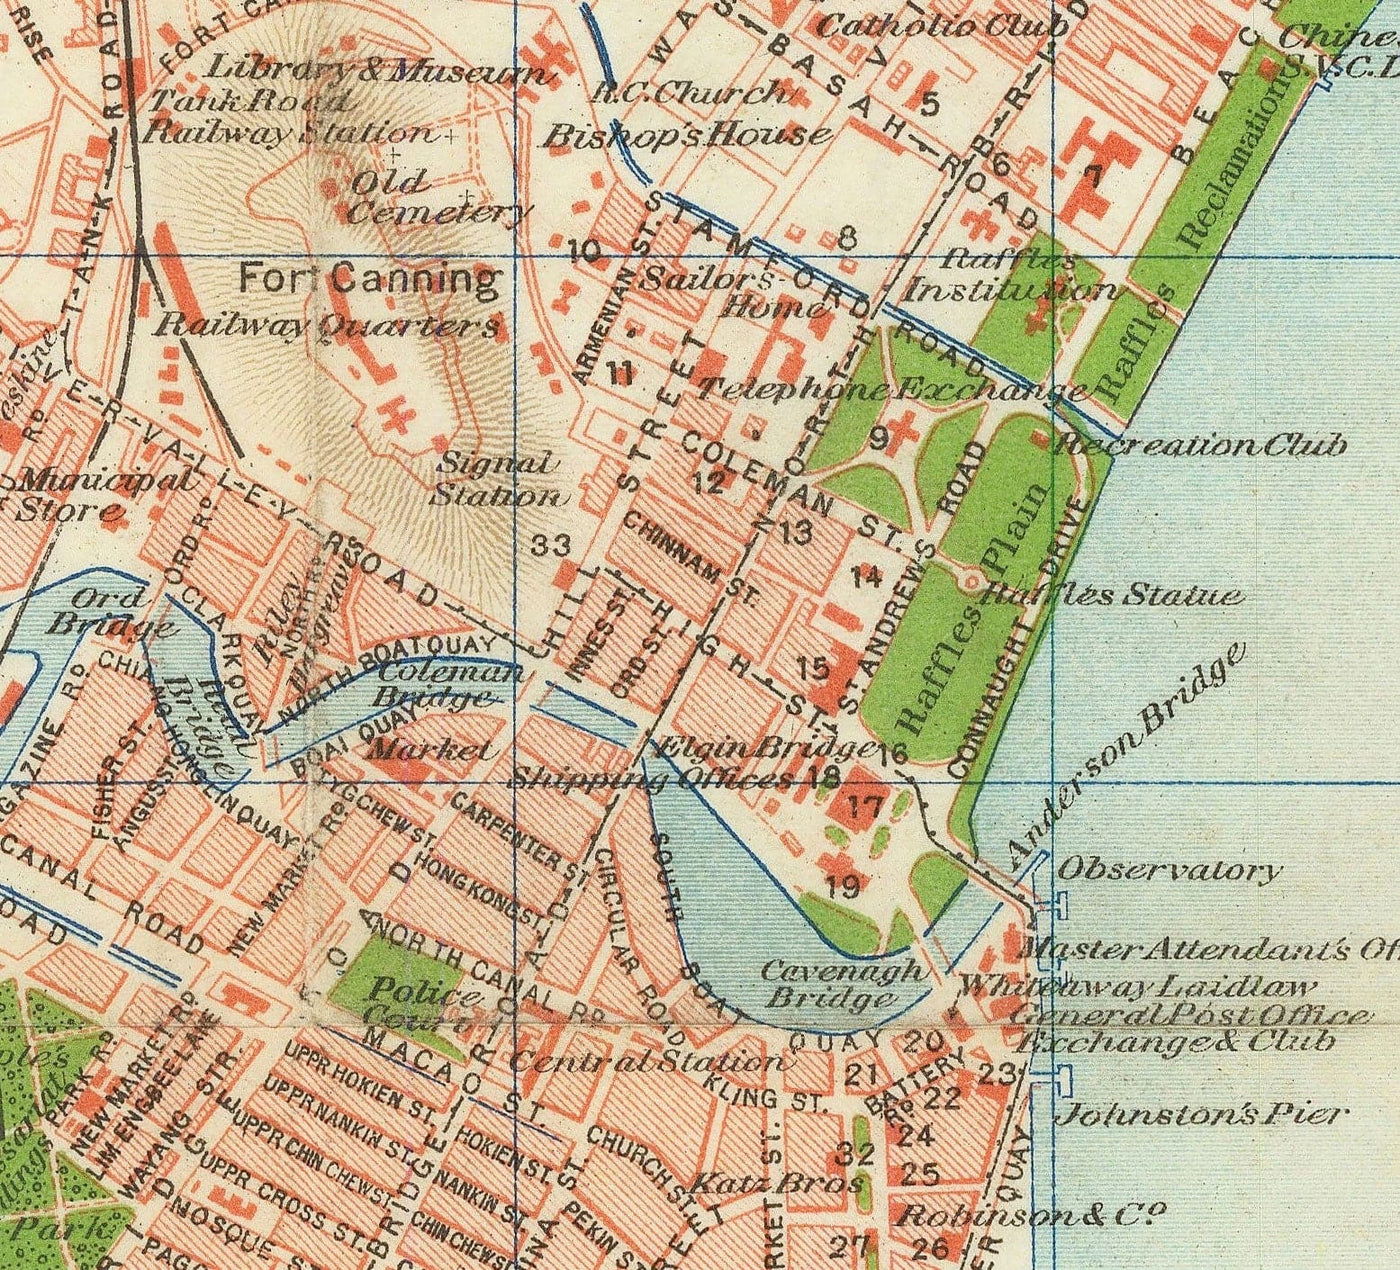 Seltene alte Karte von Singapur, 1917 - Britisches Empire-Kolonie, Pulau Ujong, Botanische Gärten, Marina, Bay